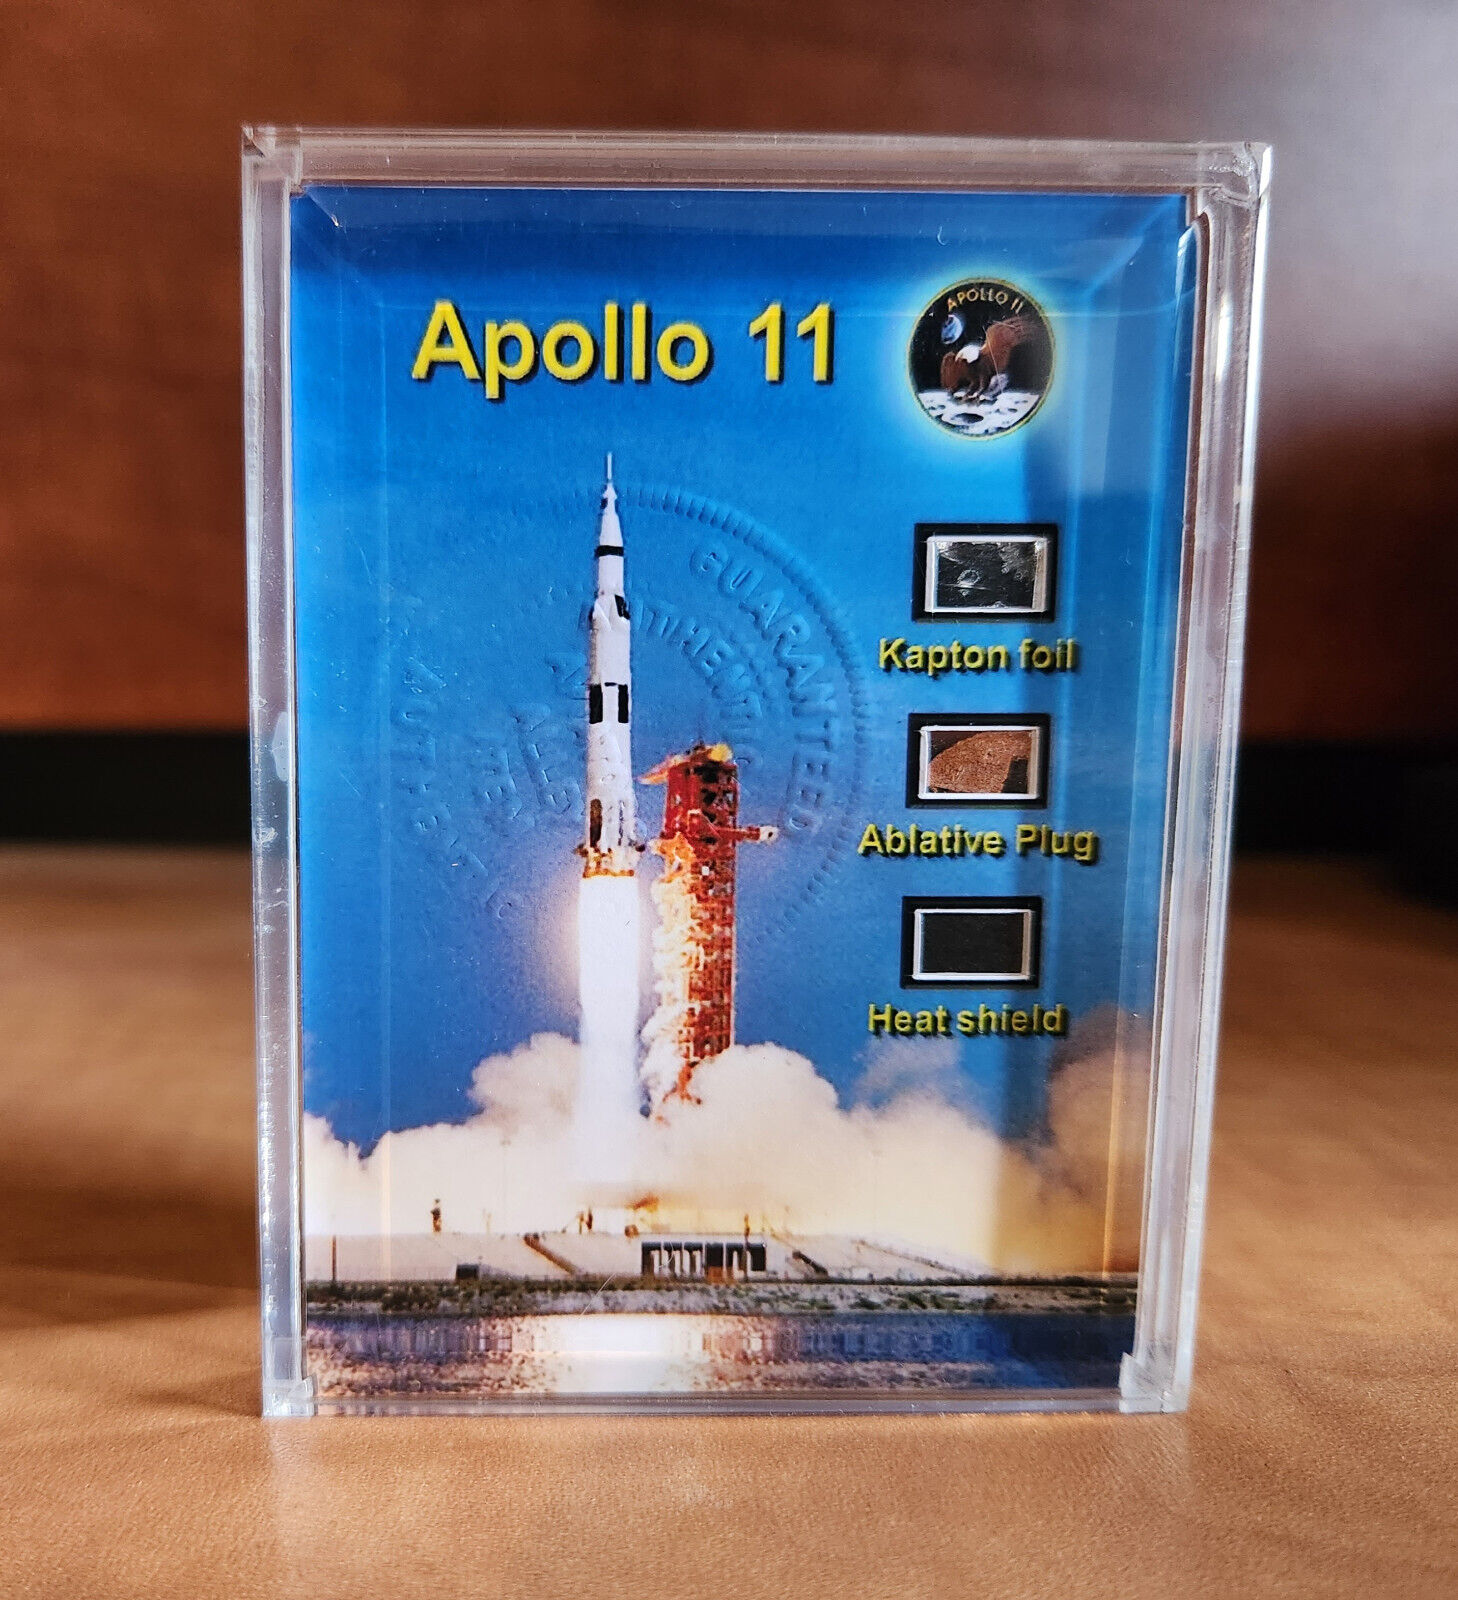 Pieces of Apollo 11 flown kapton foil, abrasive plug, heat shield display